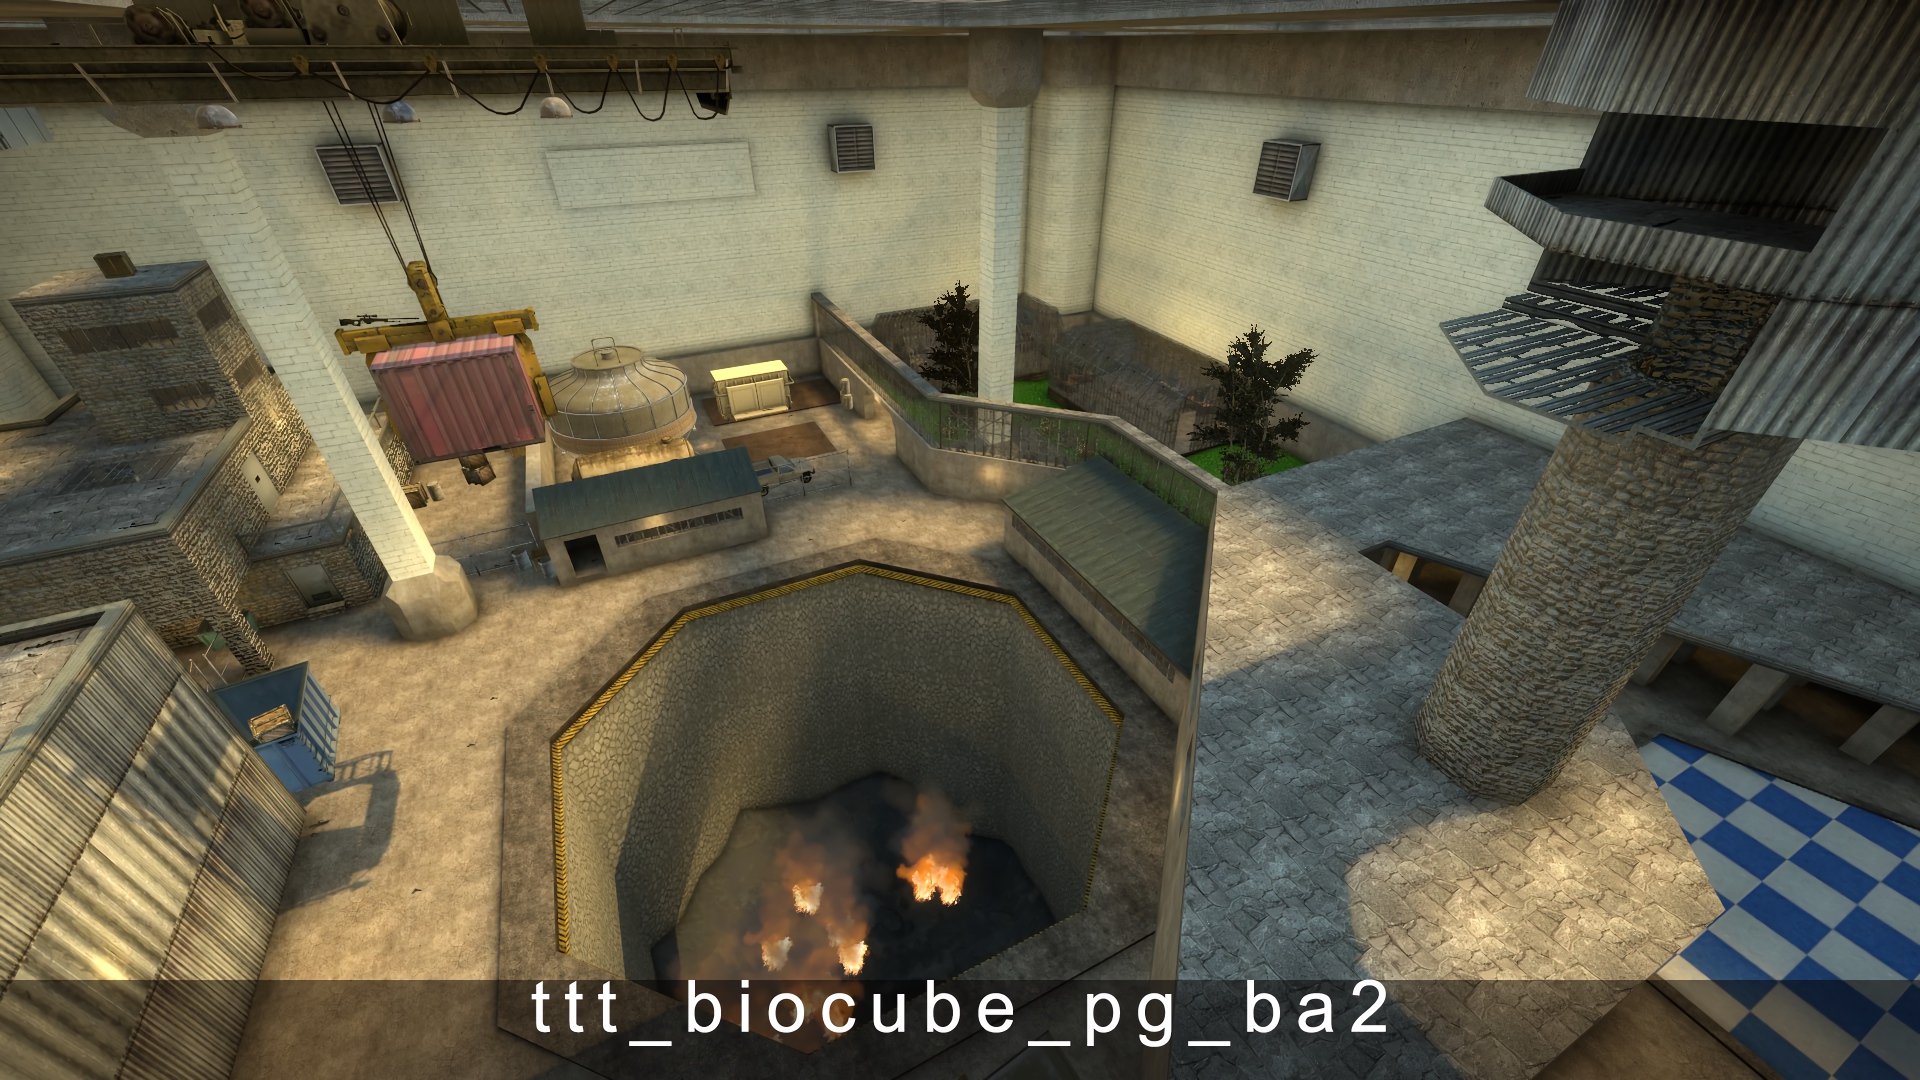 ttt_biocube_pg_ba2.jpg